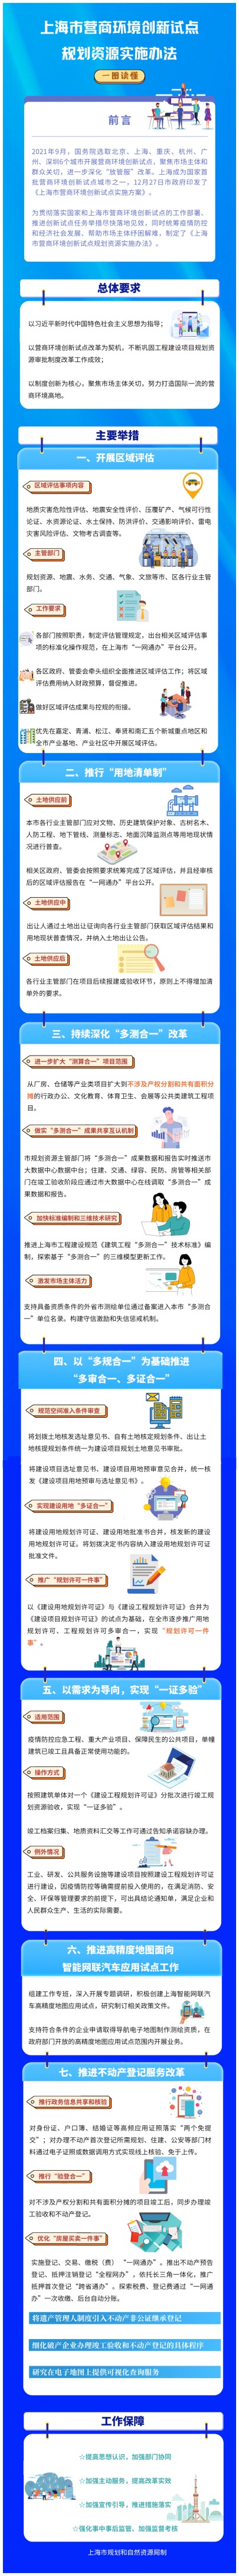 一图读懂《上海市营商环境创新试点规划资源实施办法》插图